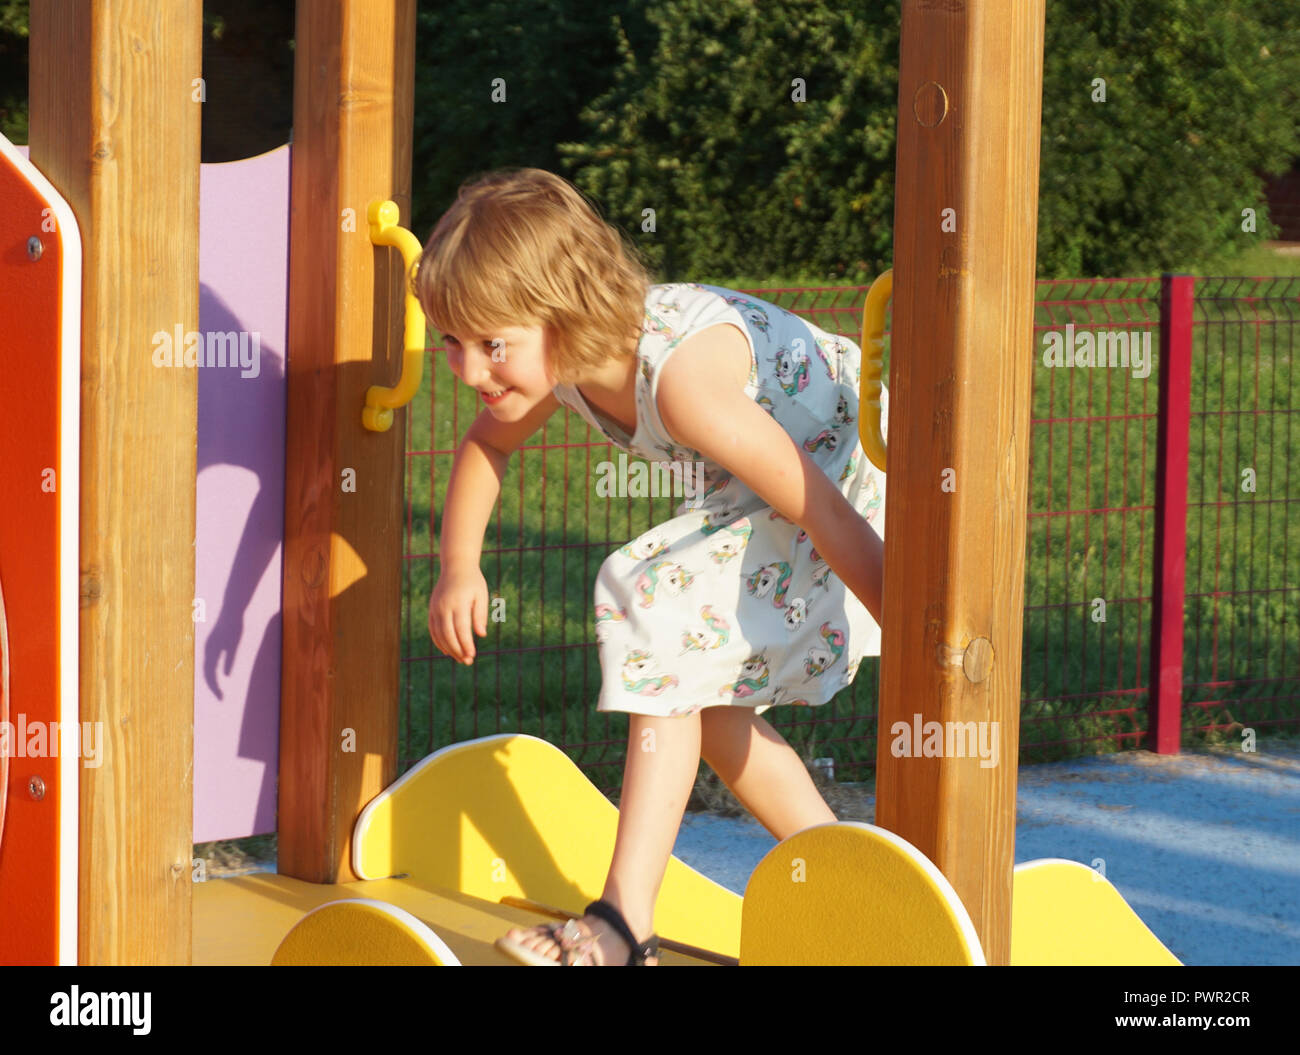 Une petite fille sur une aire de jeux. Activités de développement de l'enfant sur une aire de jeux pour enfants Banque D'Images